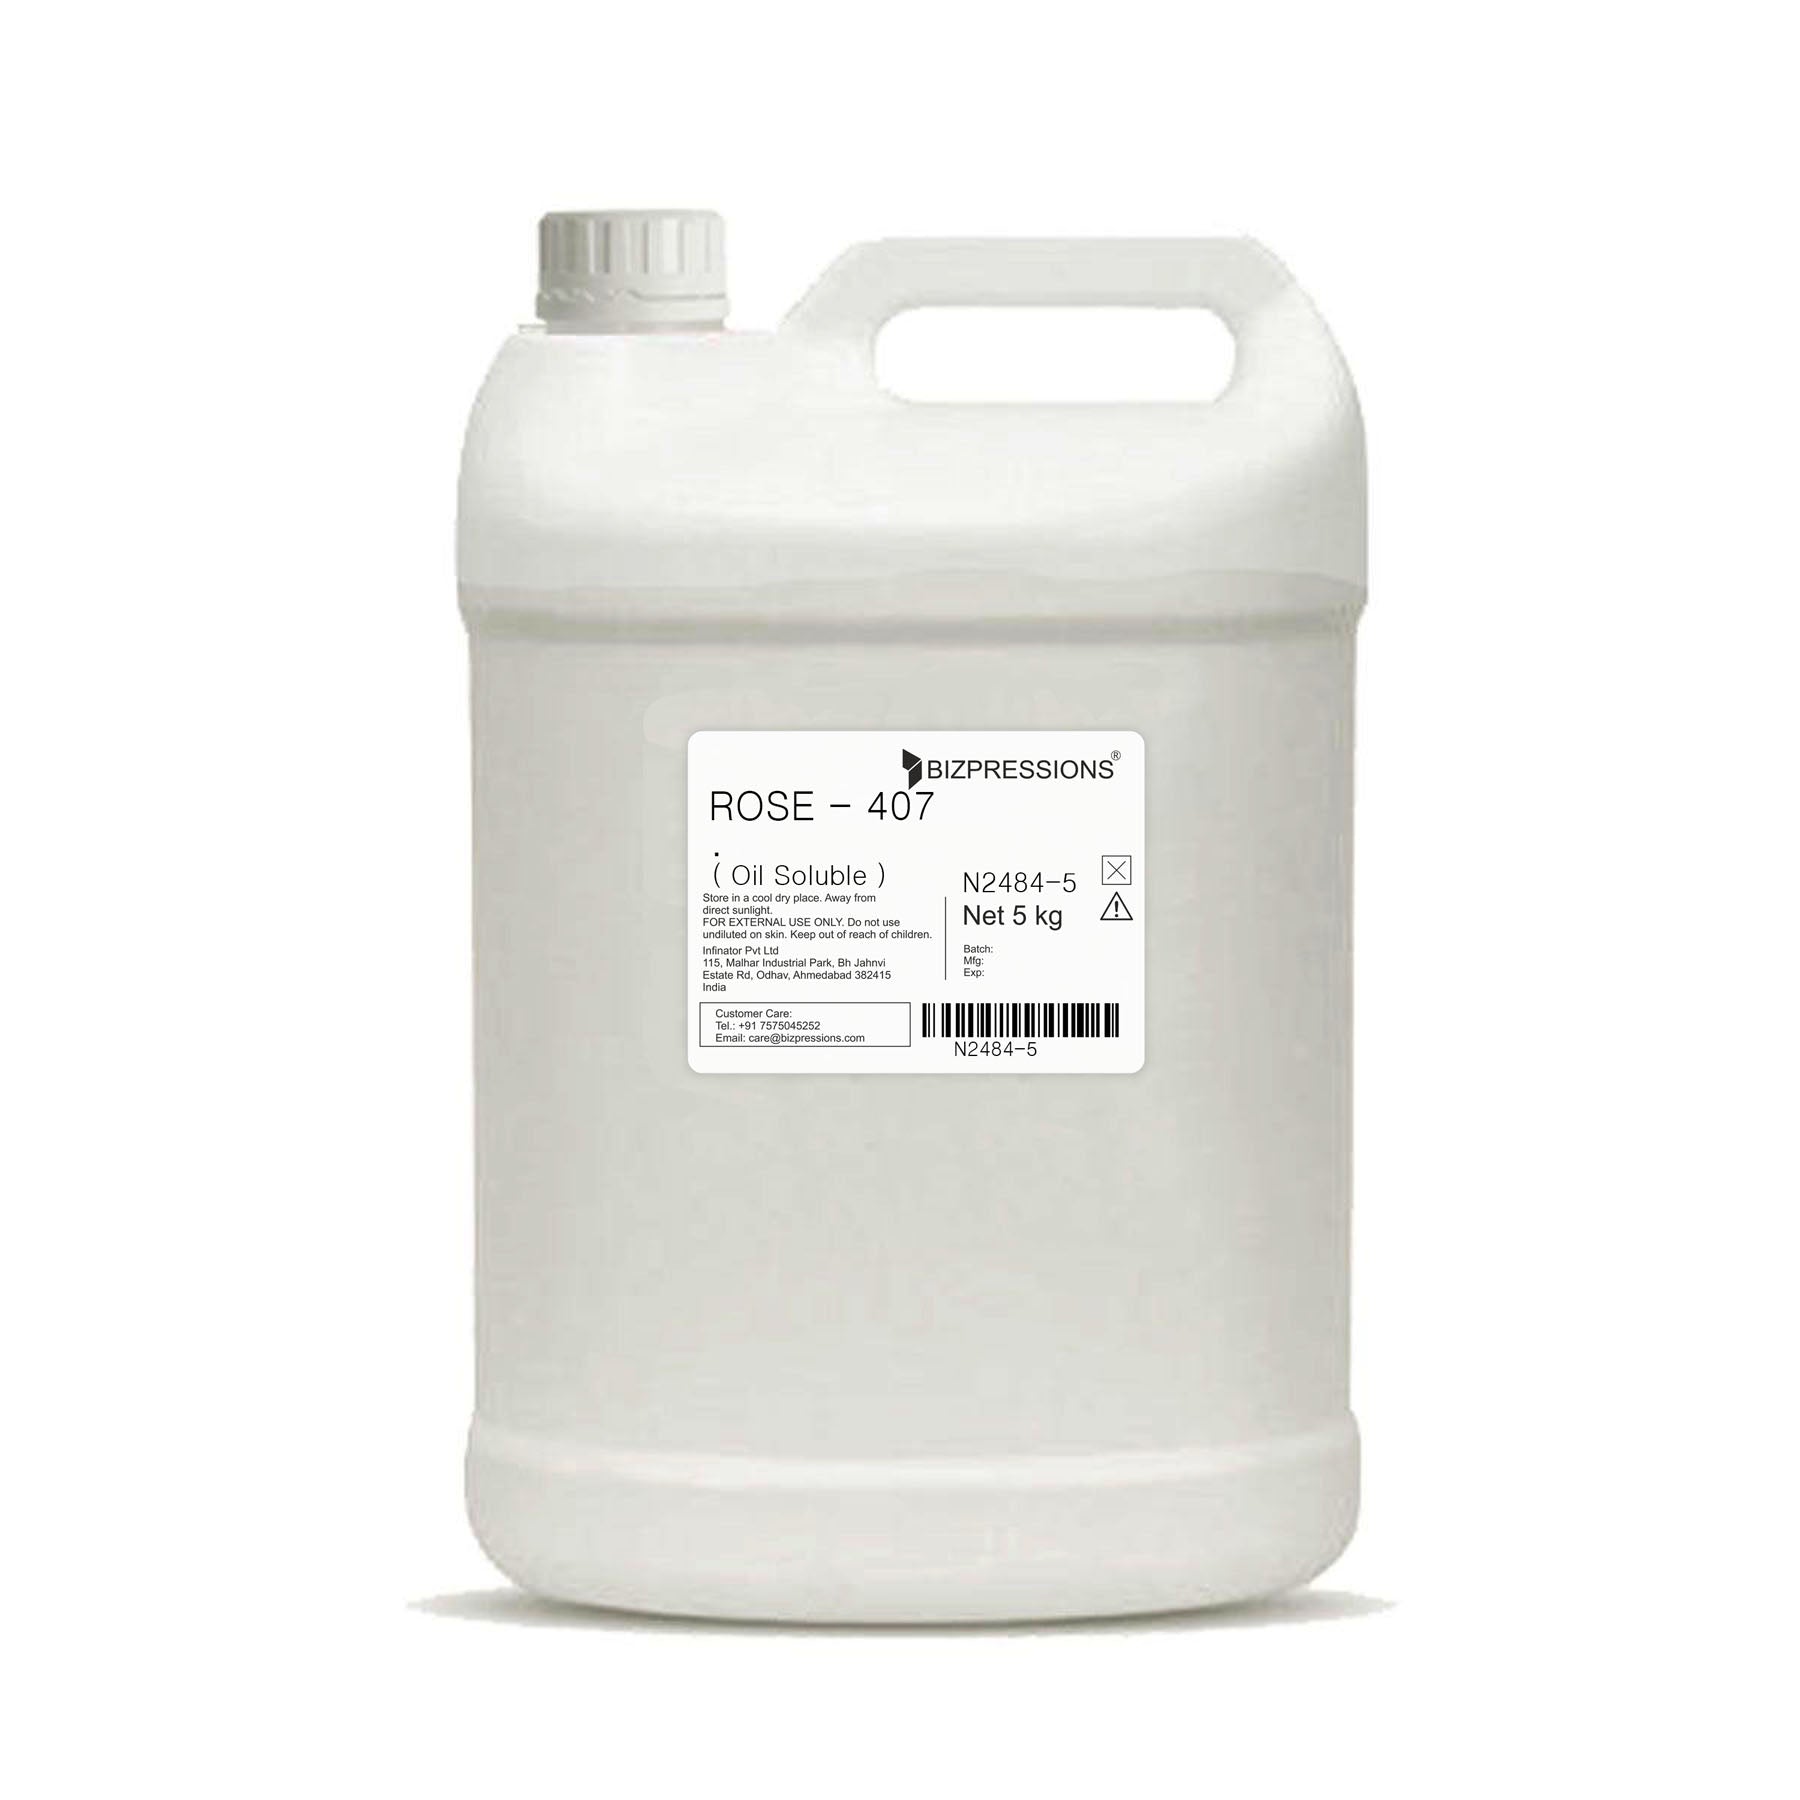 ROSE - 407 - Fragrance ( Oil Soluble ) - 5 kg